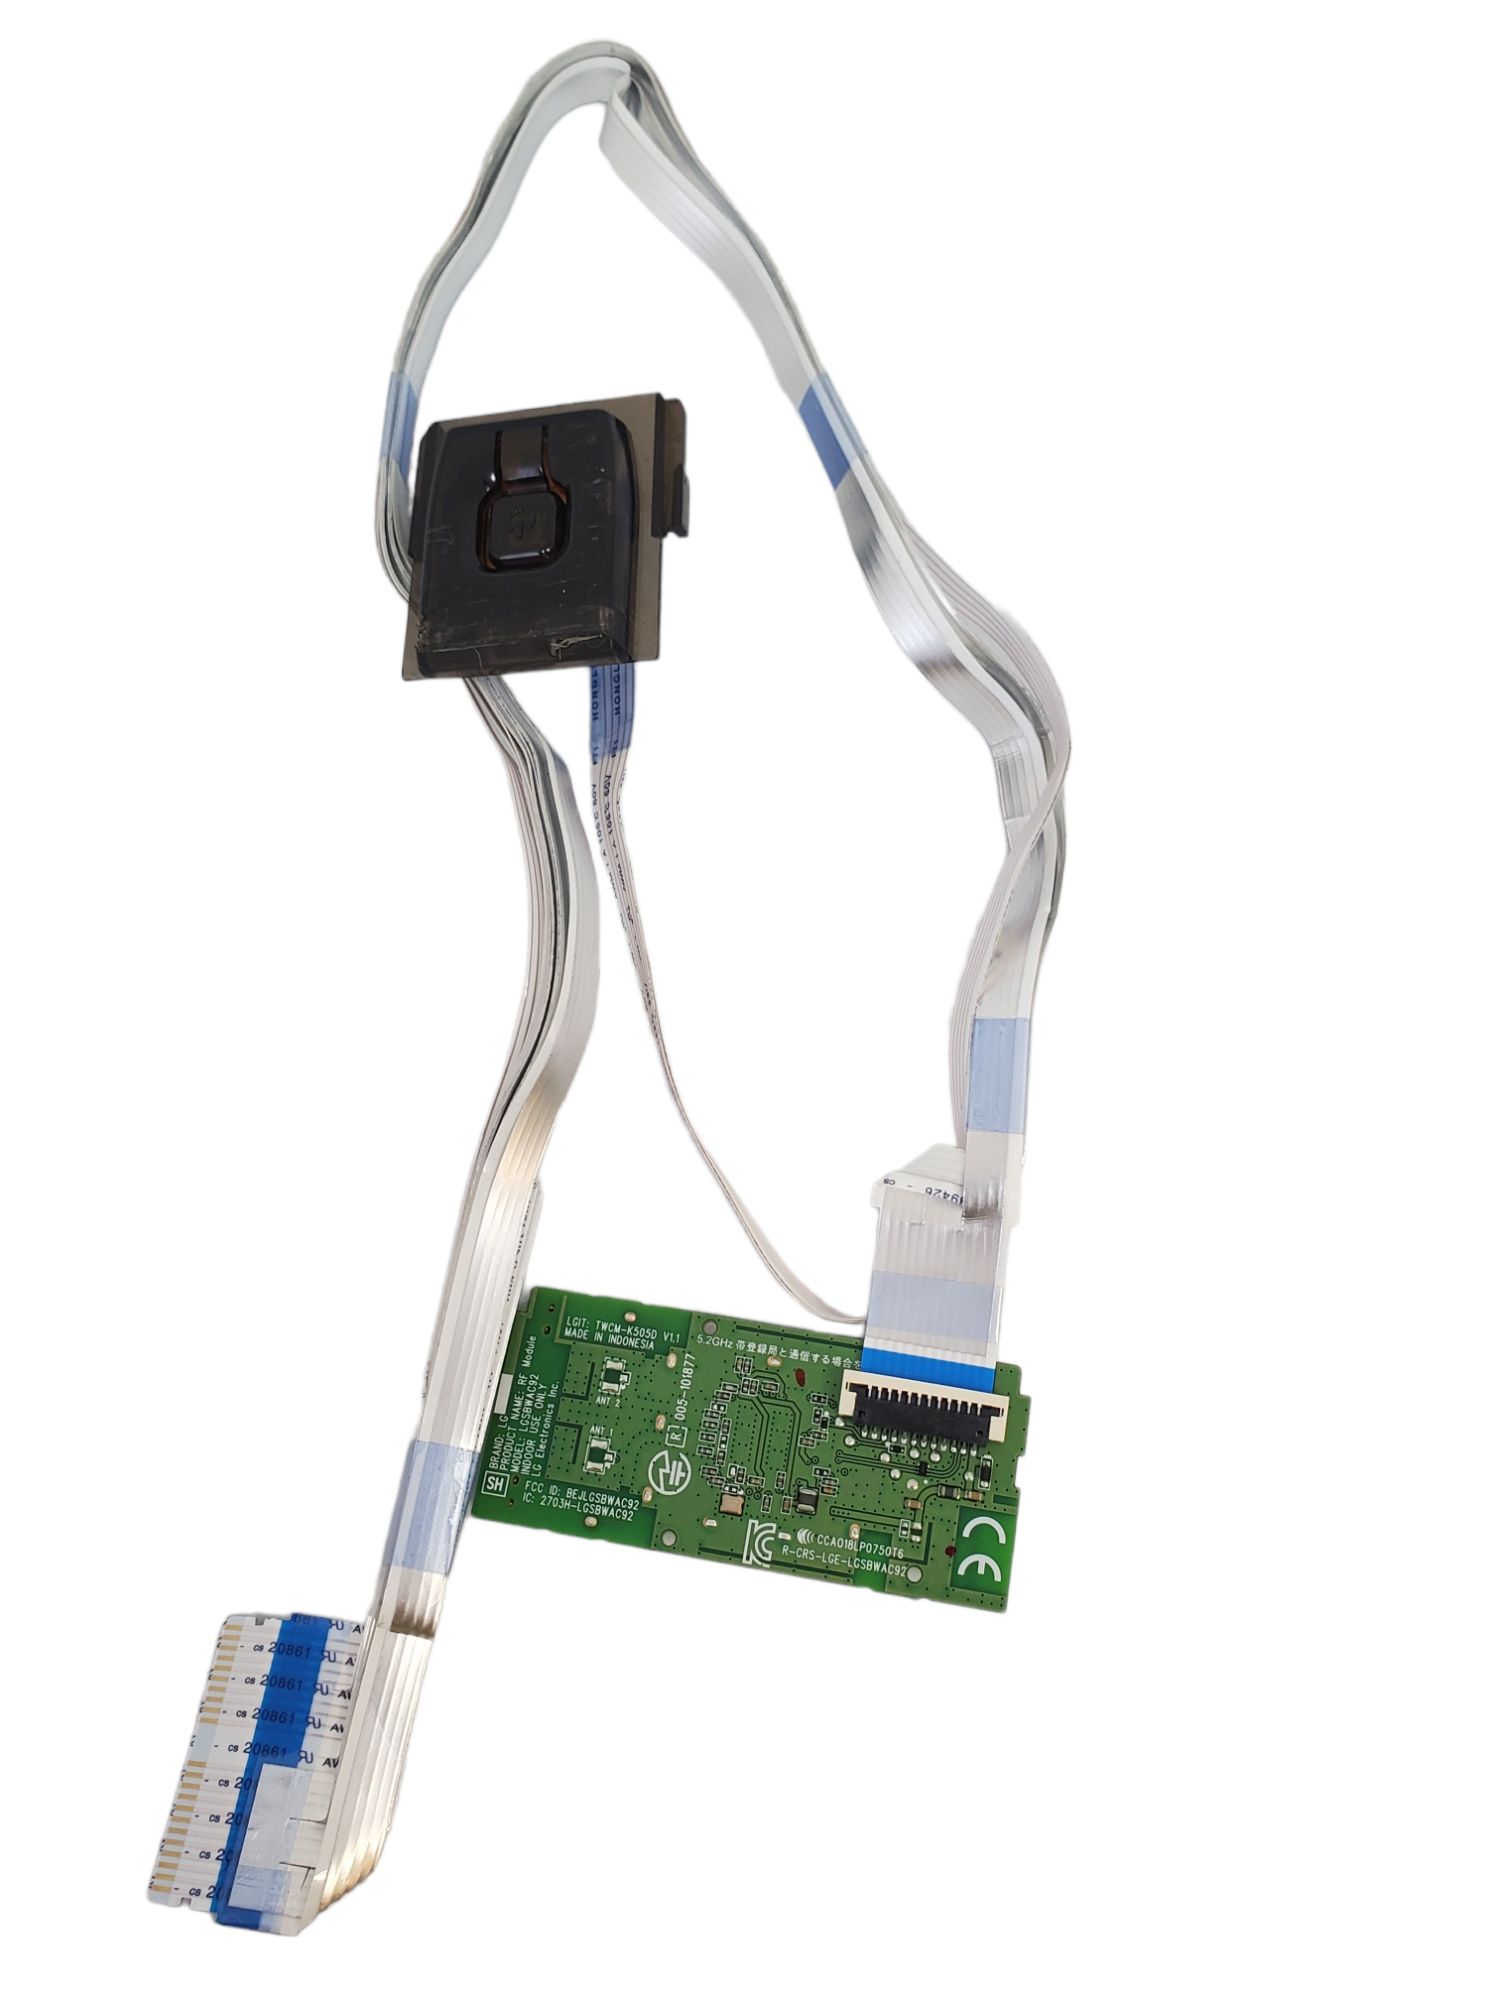 kit flexor, cables de corriente, modulo wifi y boton de encendido LG UN8570PUB